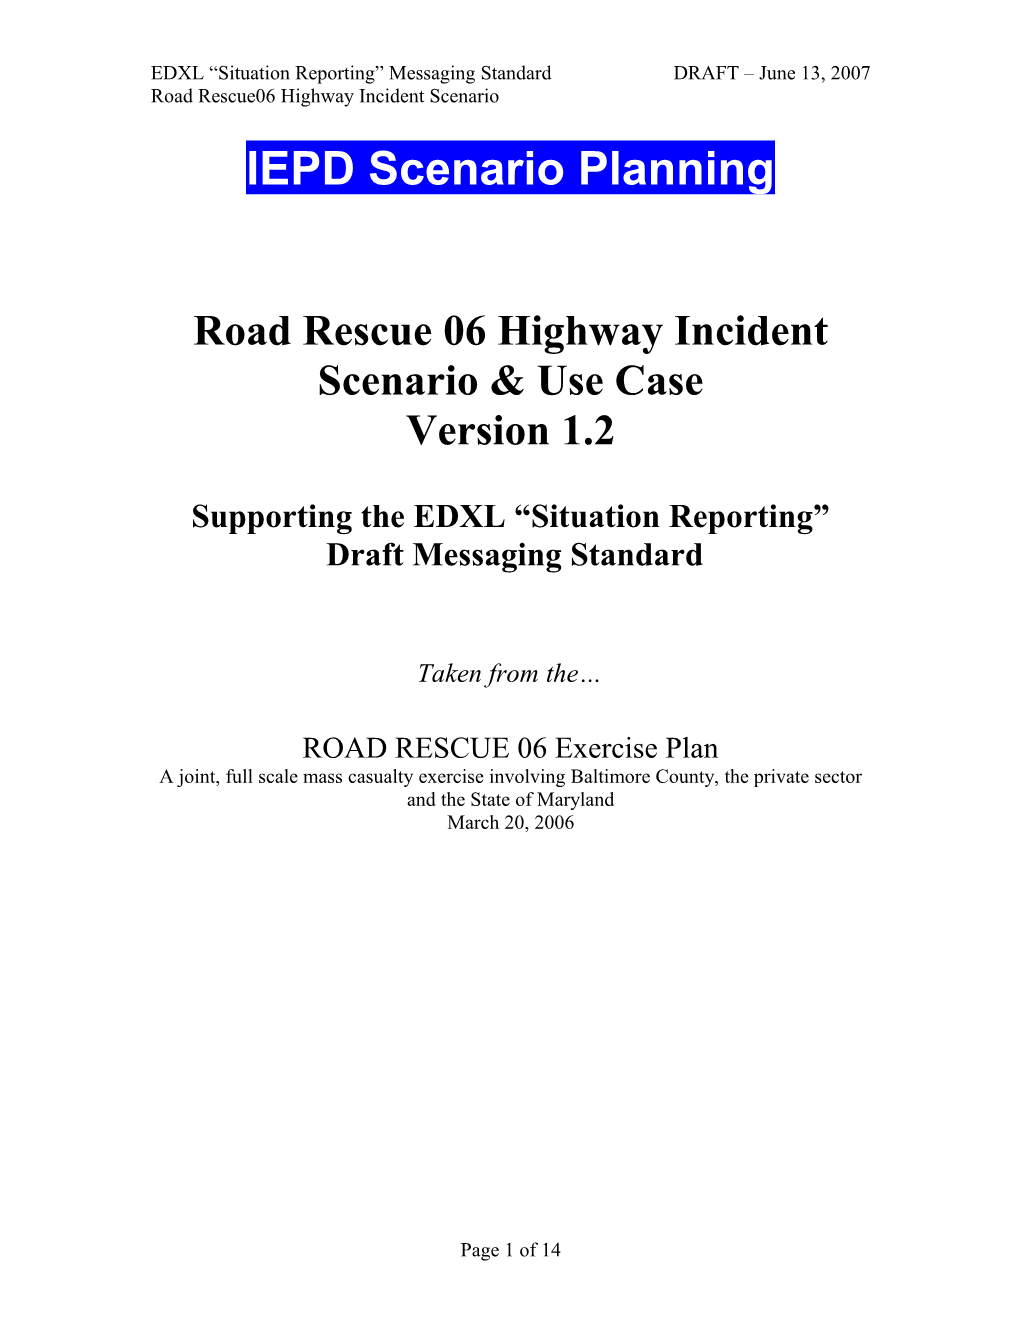 Road Rescue 06 Highway Incident Scenario & Use Case